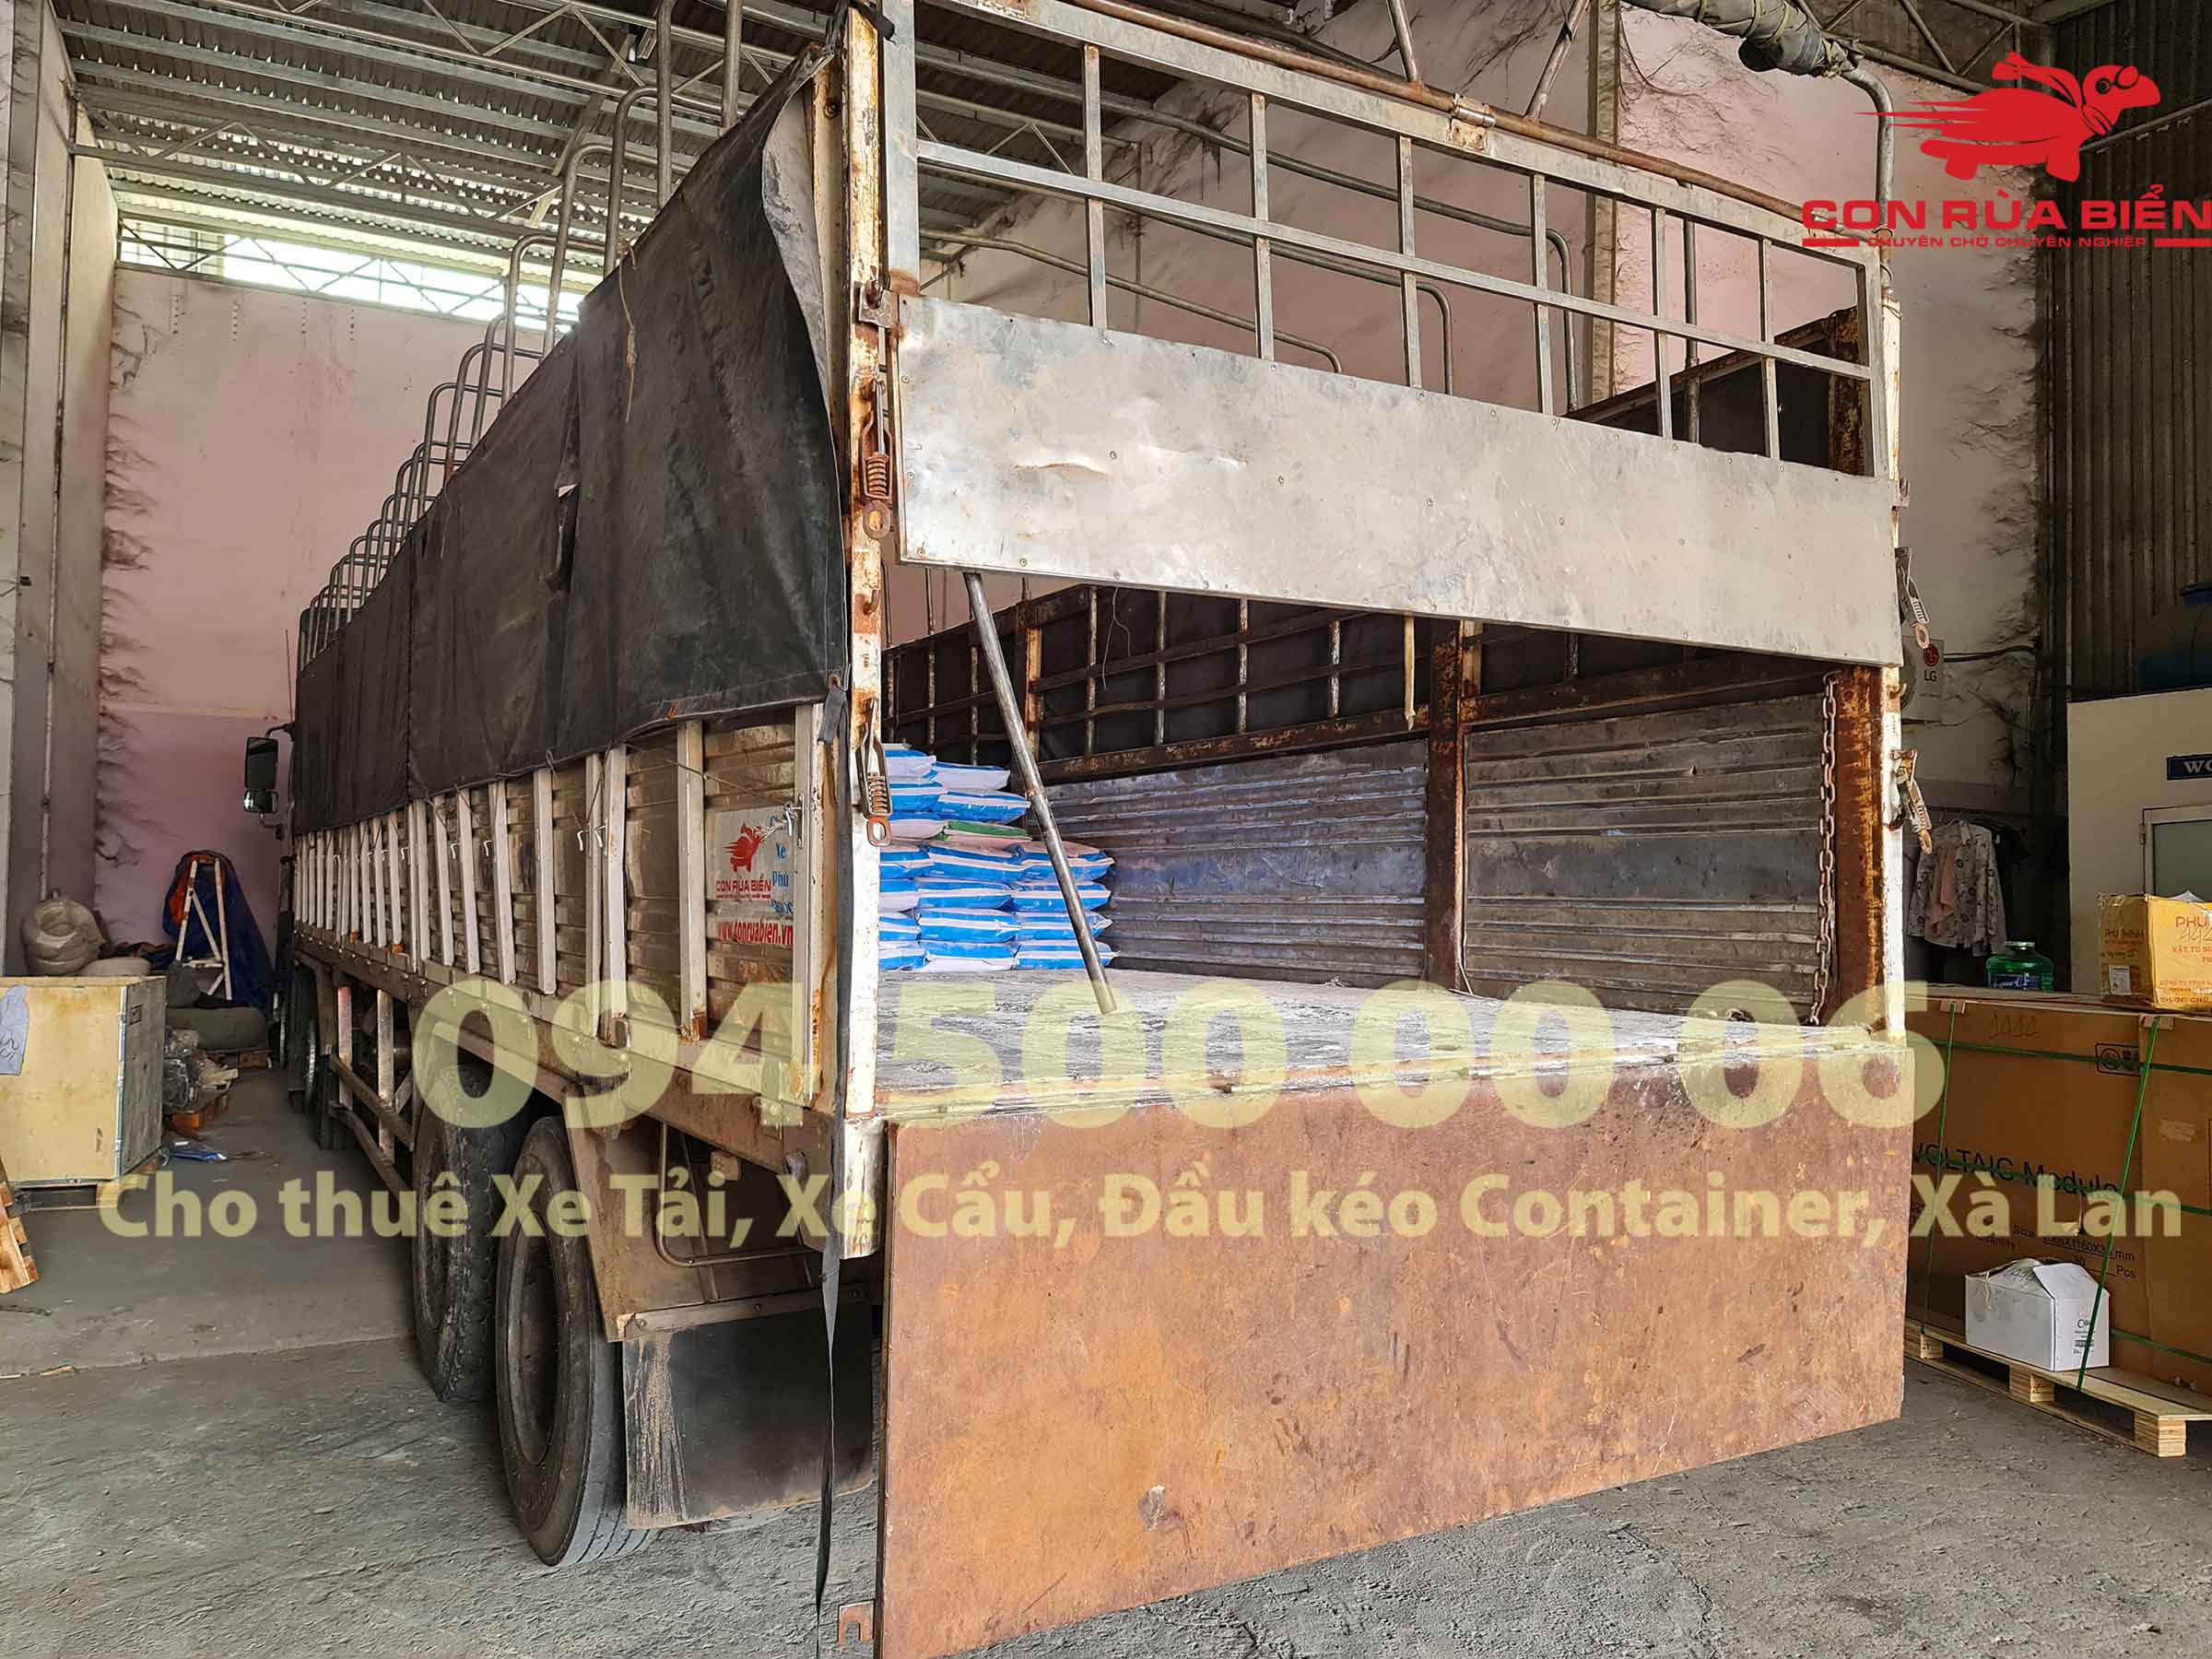 Van chuyen hang Xi Mang – Bot tret tuong – Keo dan gach di Phu Quoc 22